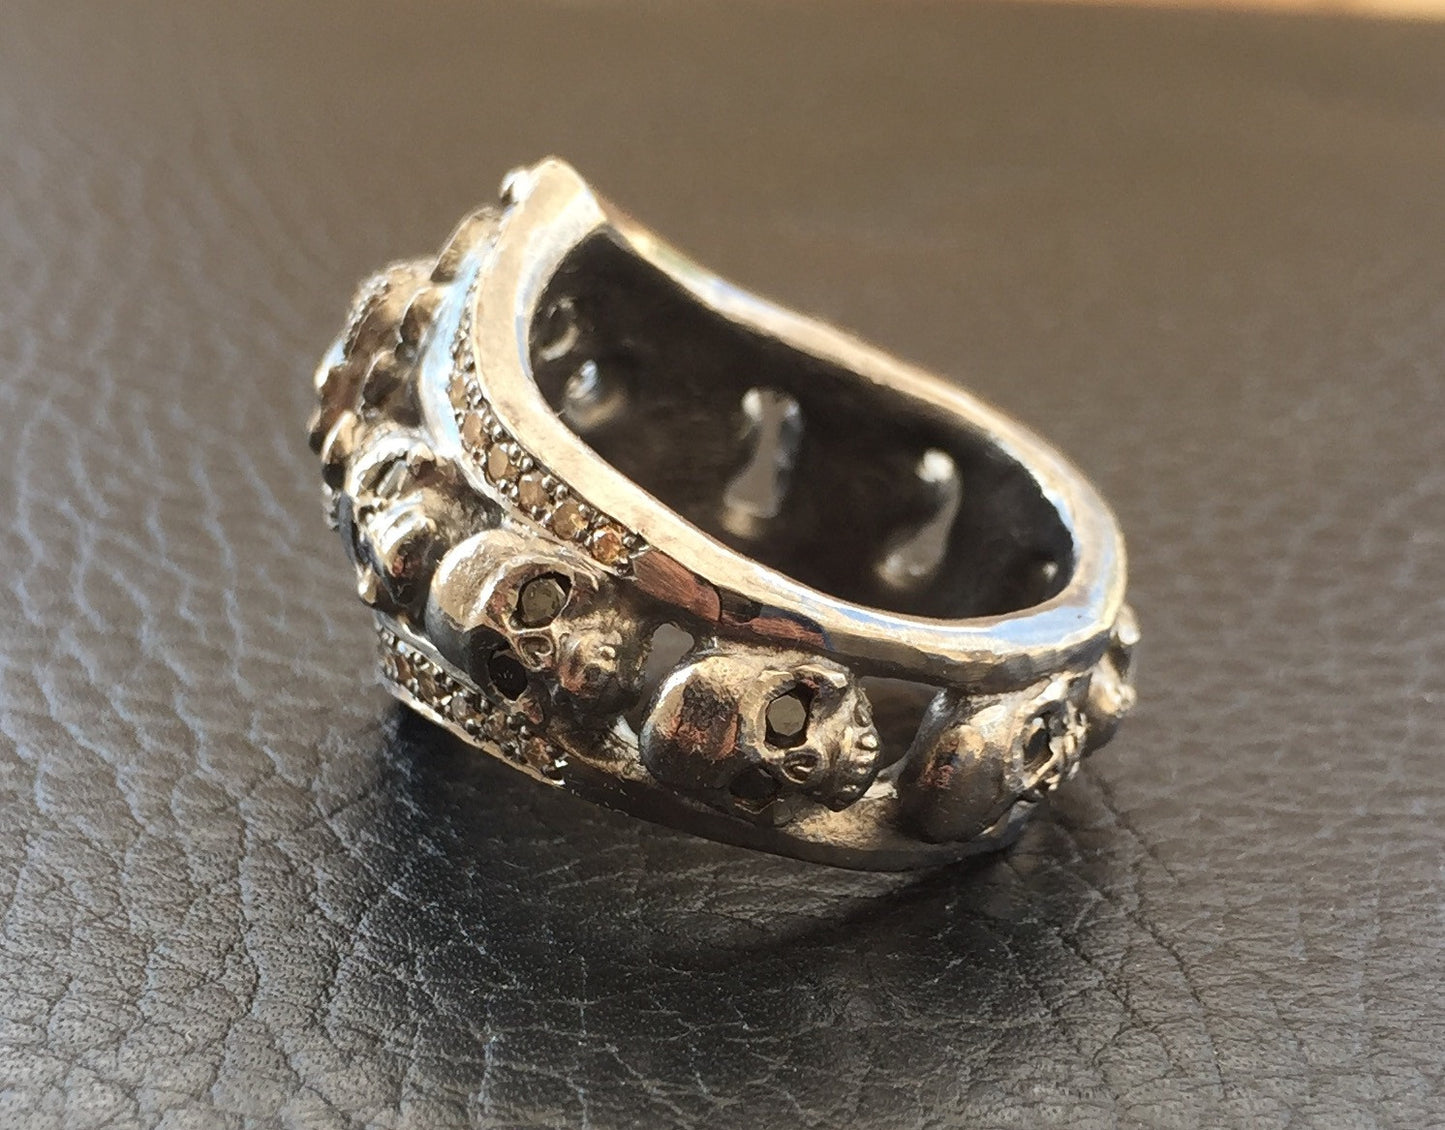  Sterling Silver Skull Ring w Diamonds by Roman Paul